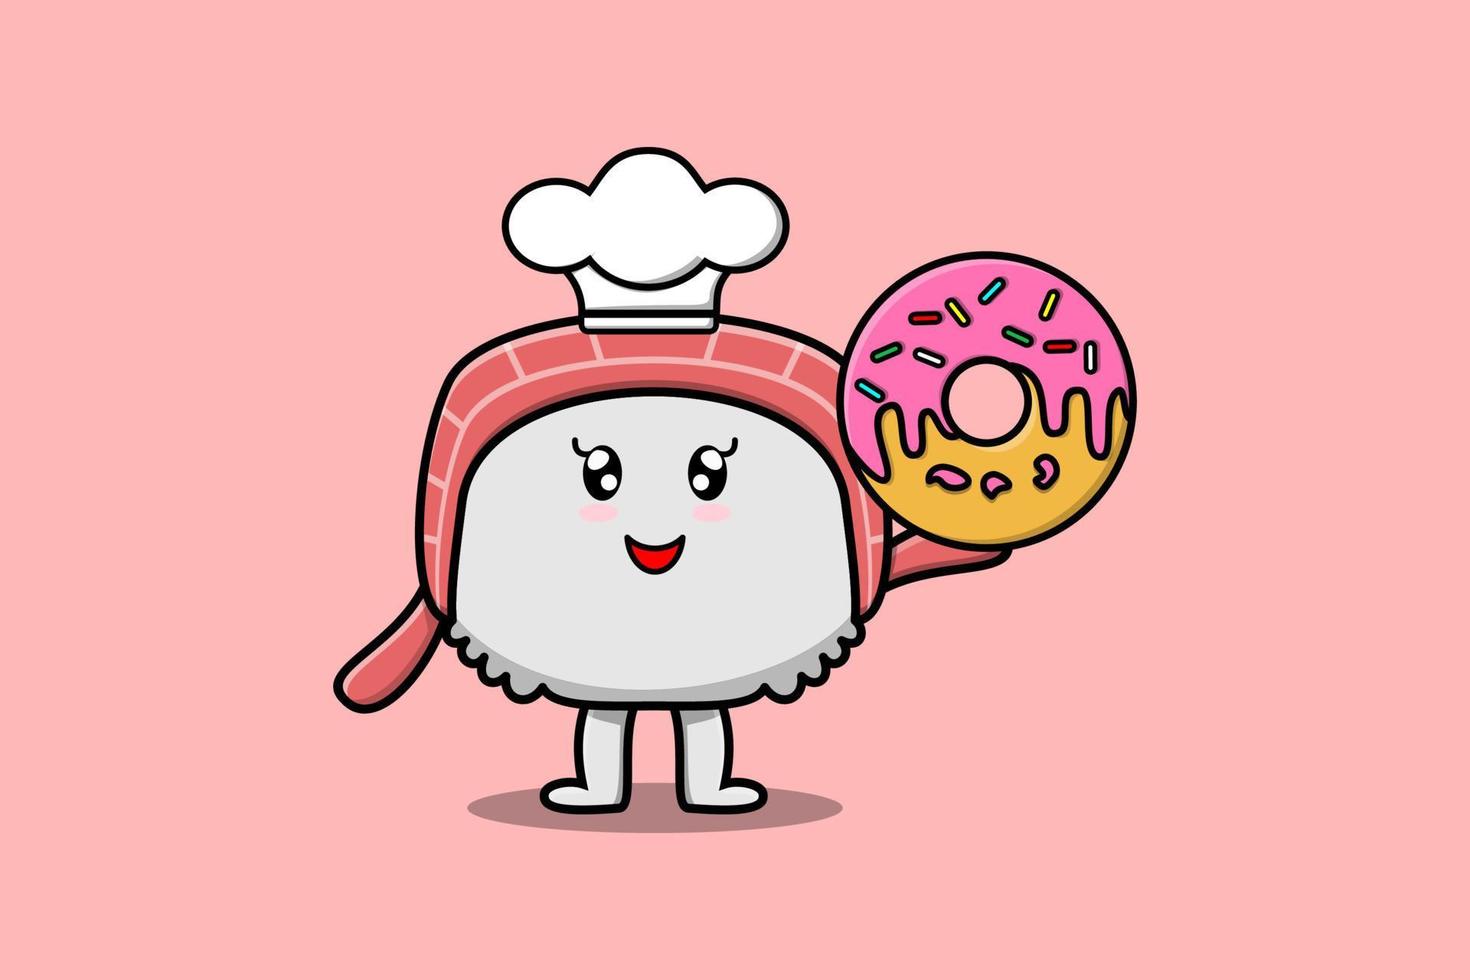 süße Cartoon-Sushi-Koch-Charakter-Donuts vektor